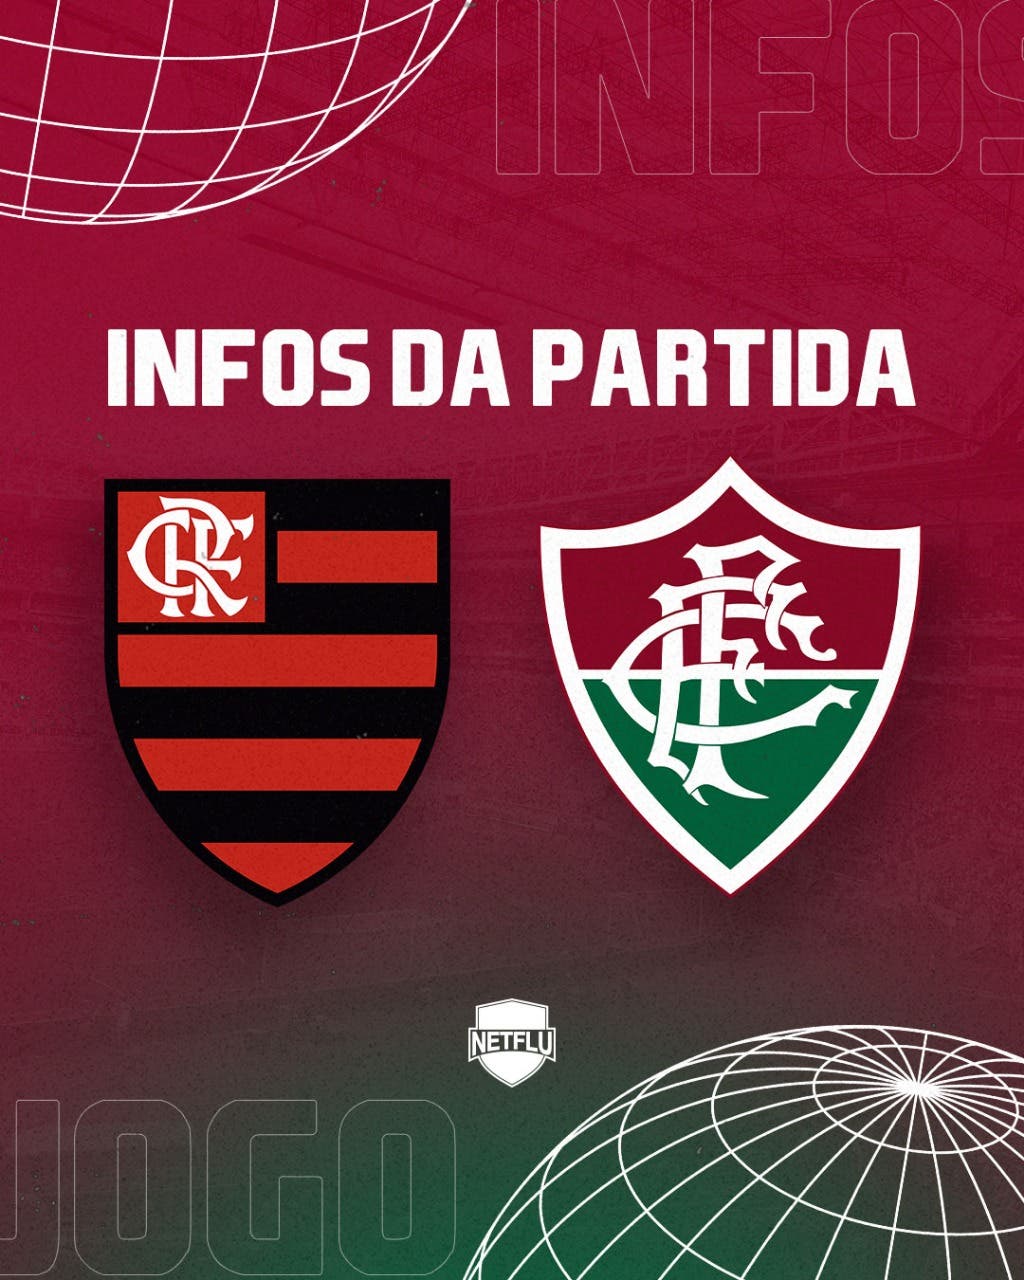 Flamengo x Fluminense: prováveis escalações, desfalques